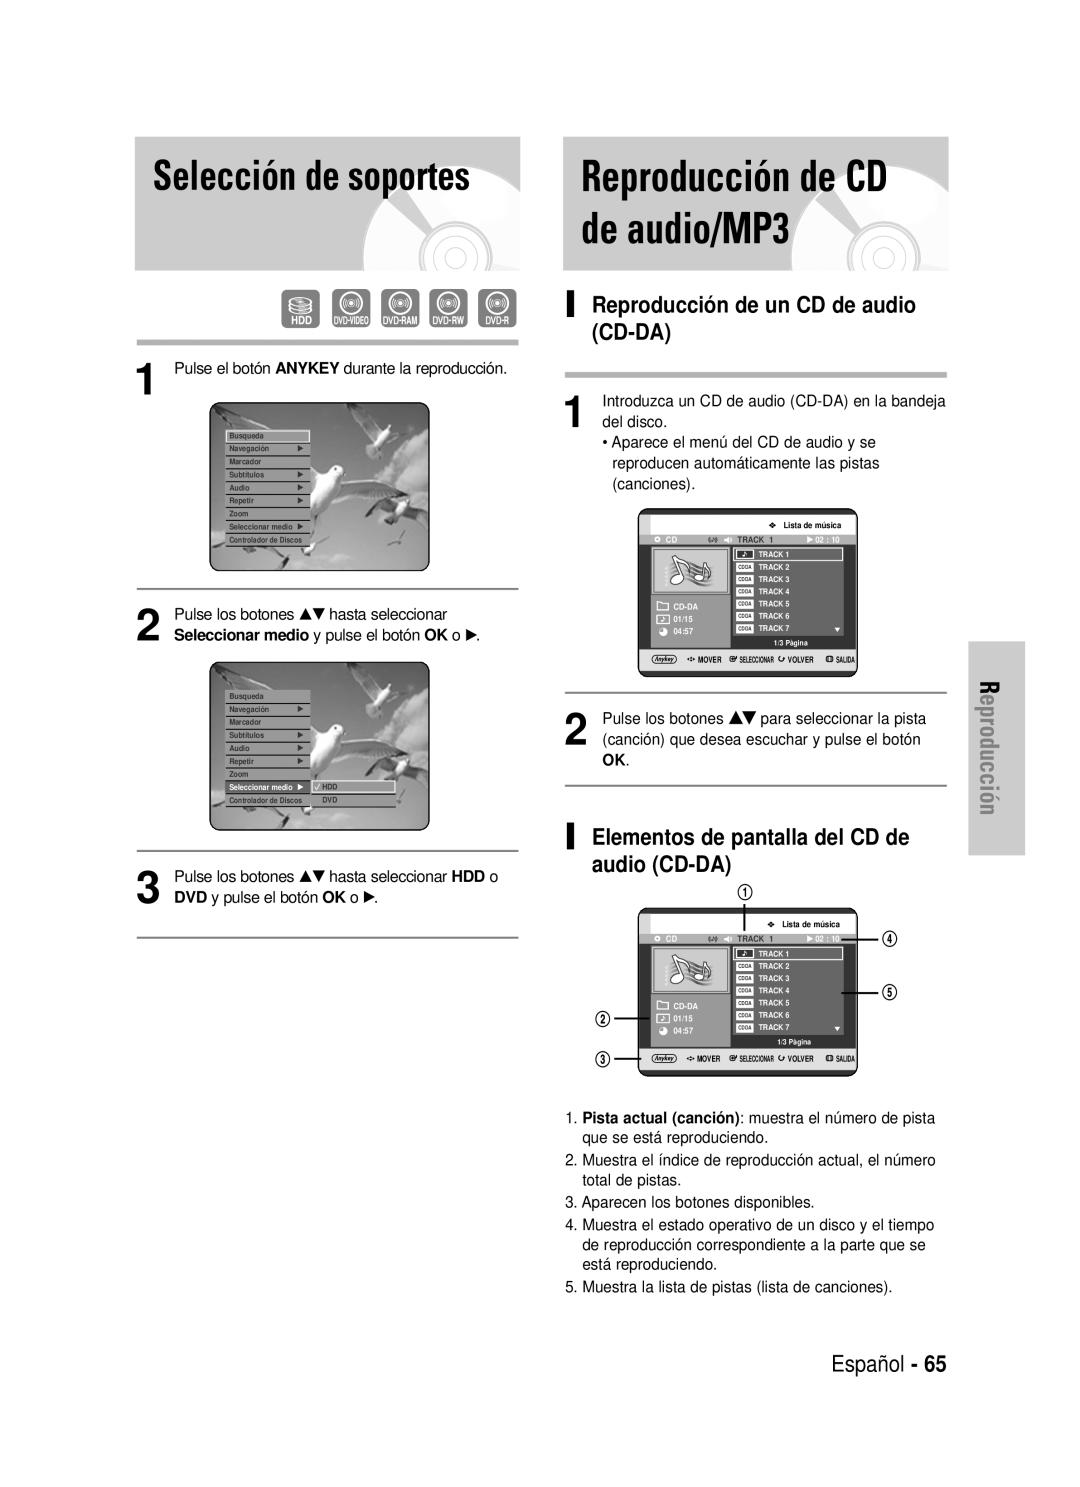 Samsung DVD-HR725/XEO manual de audio/MP3, Selección de soportes, Reproducción de CD, Reproducción de un CD de audio CD-DA 